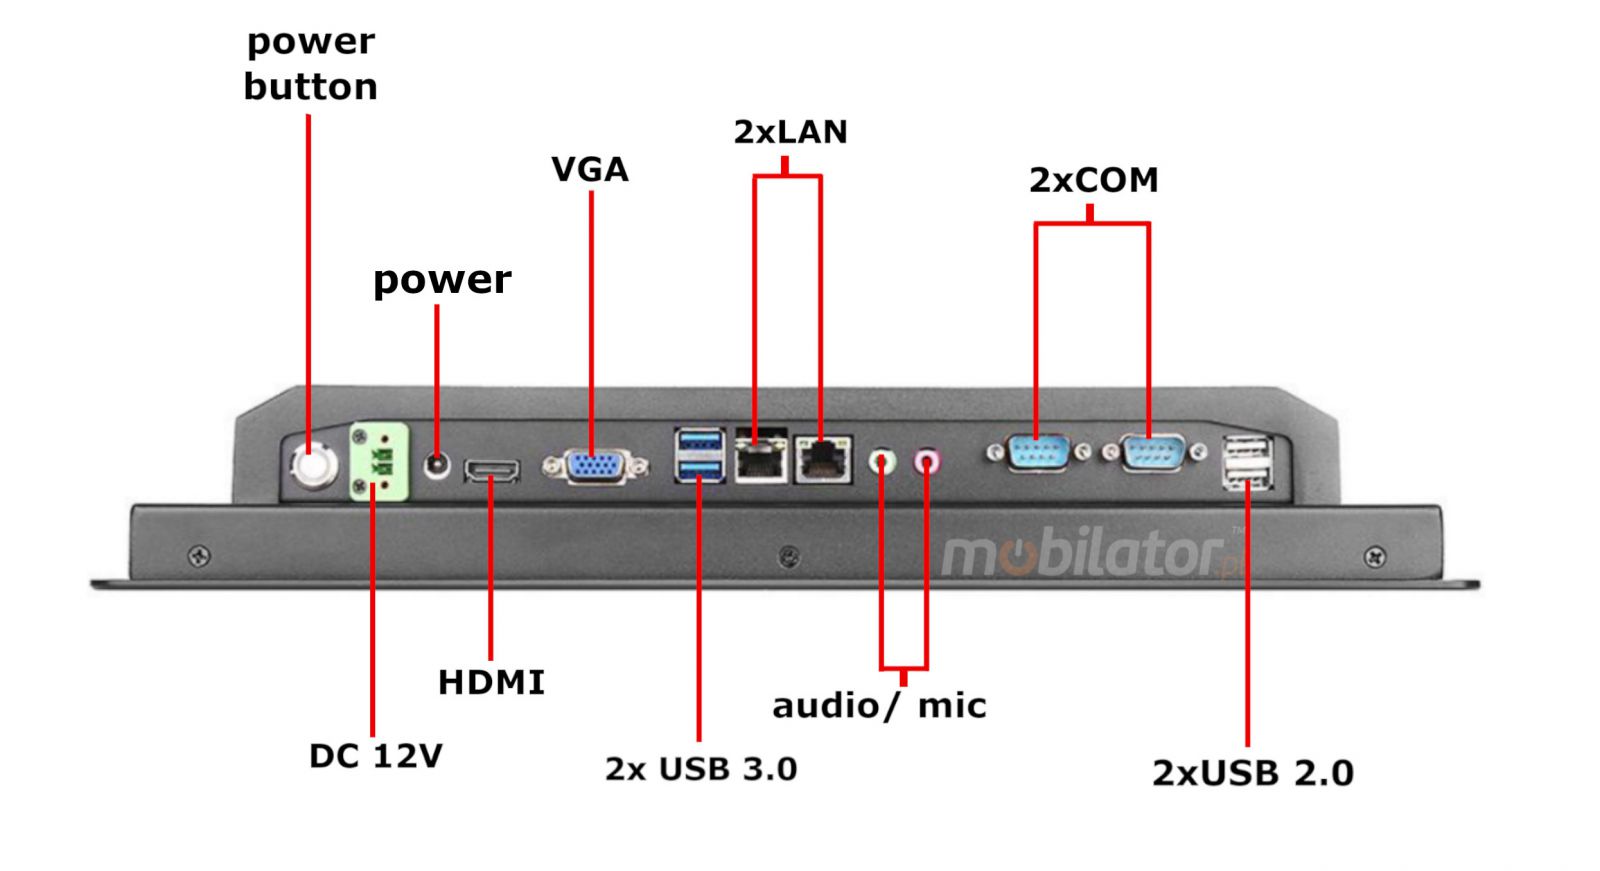 BIBOX-190PC2 with connectors 2xLAN